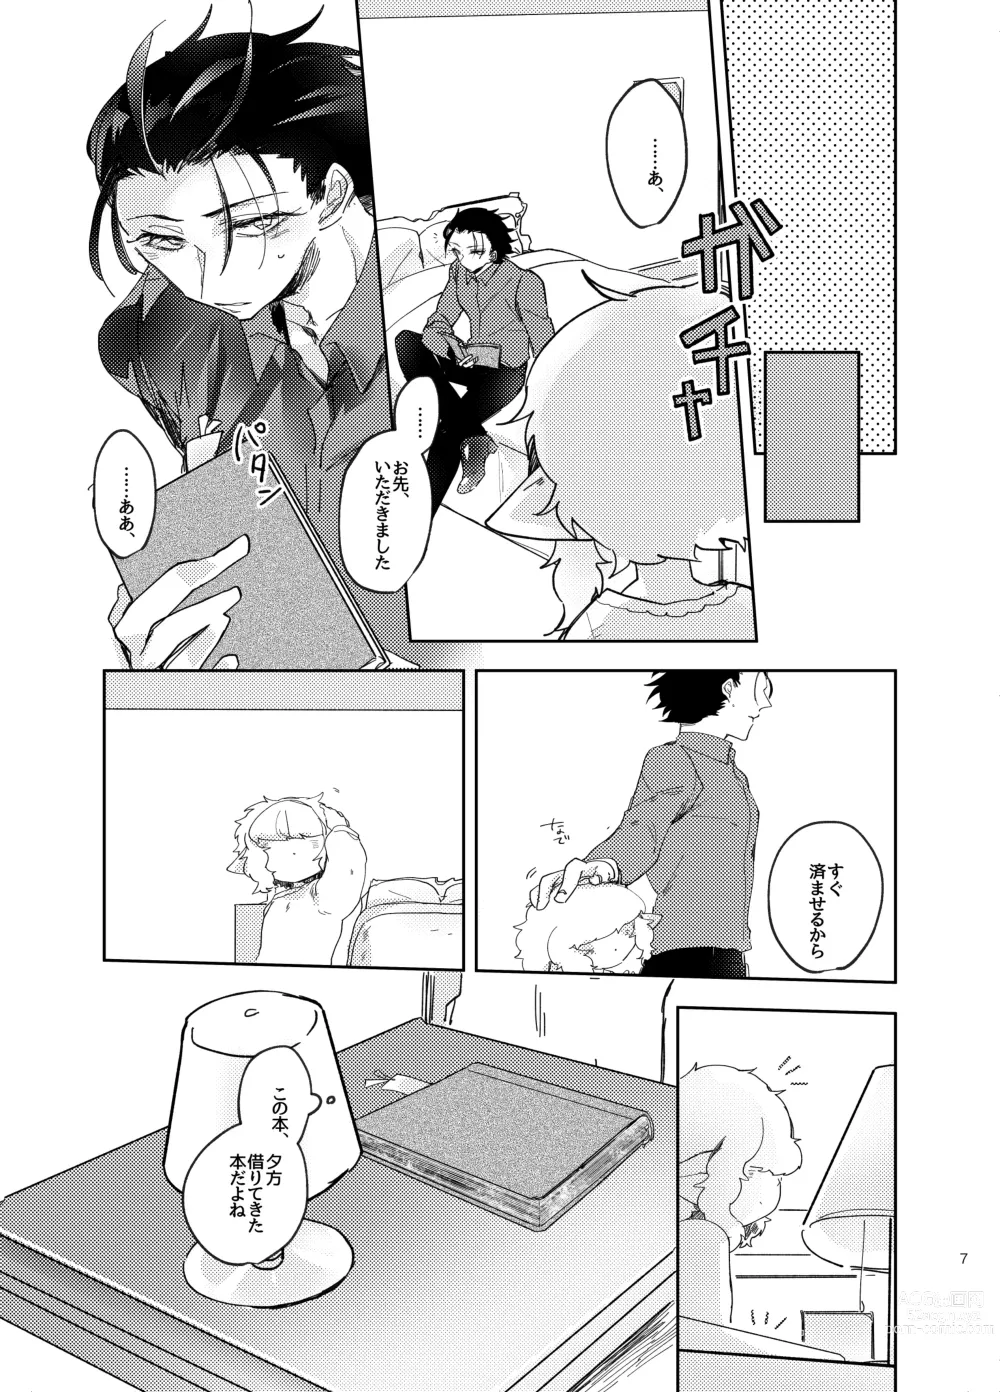 Page 7 of doujinshi Suki ni Natte ne